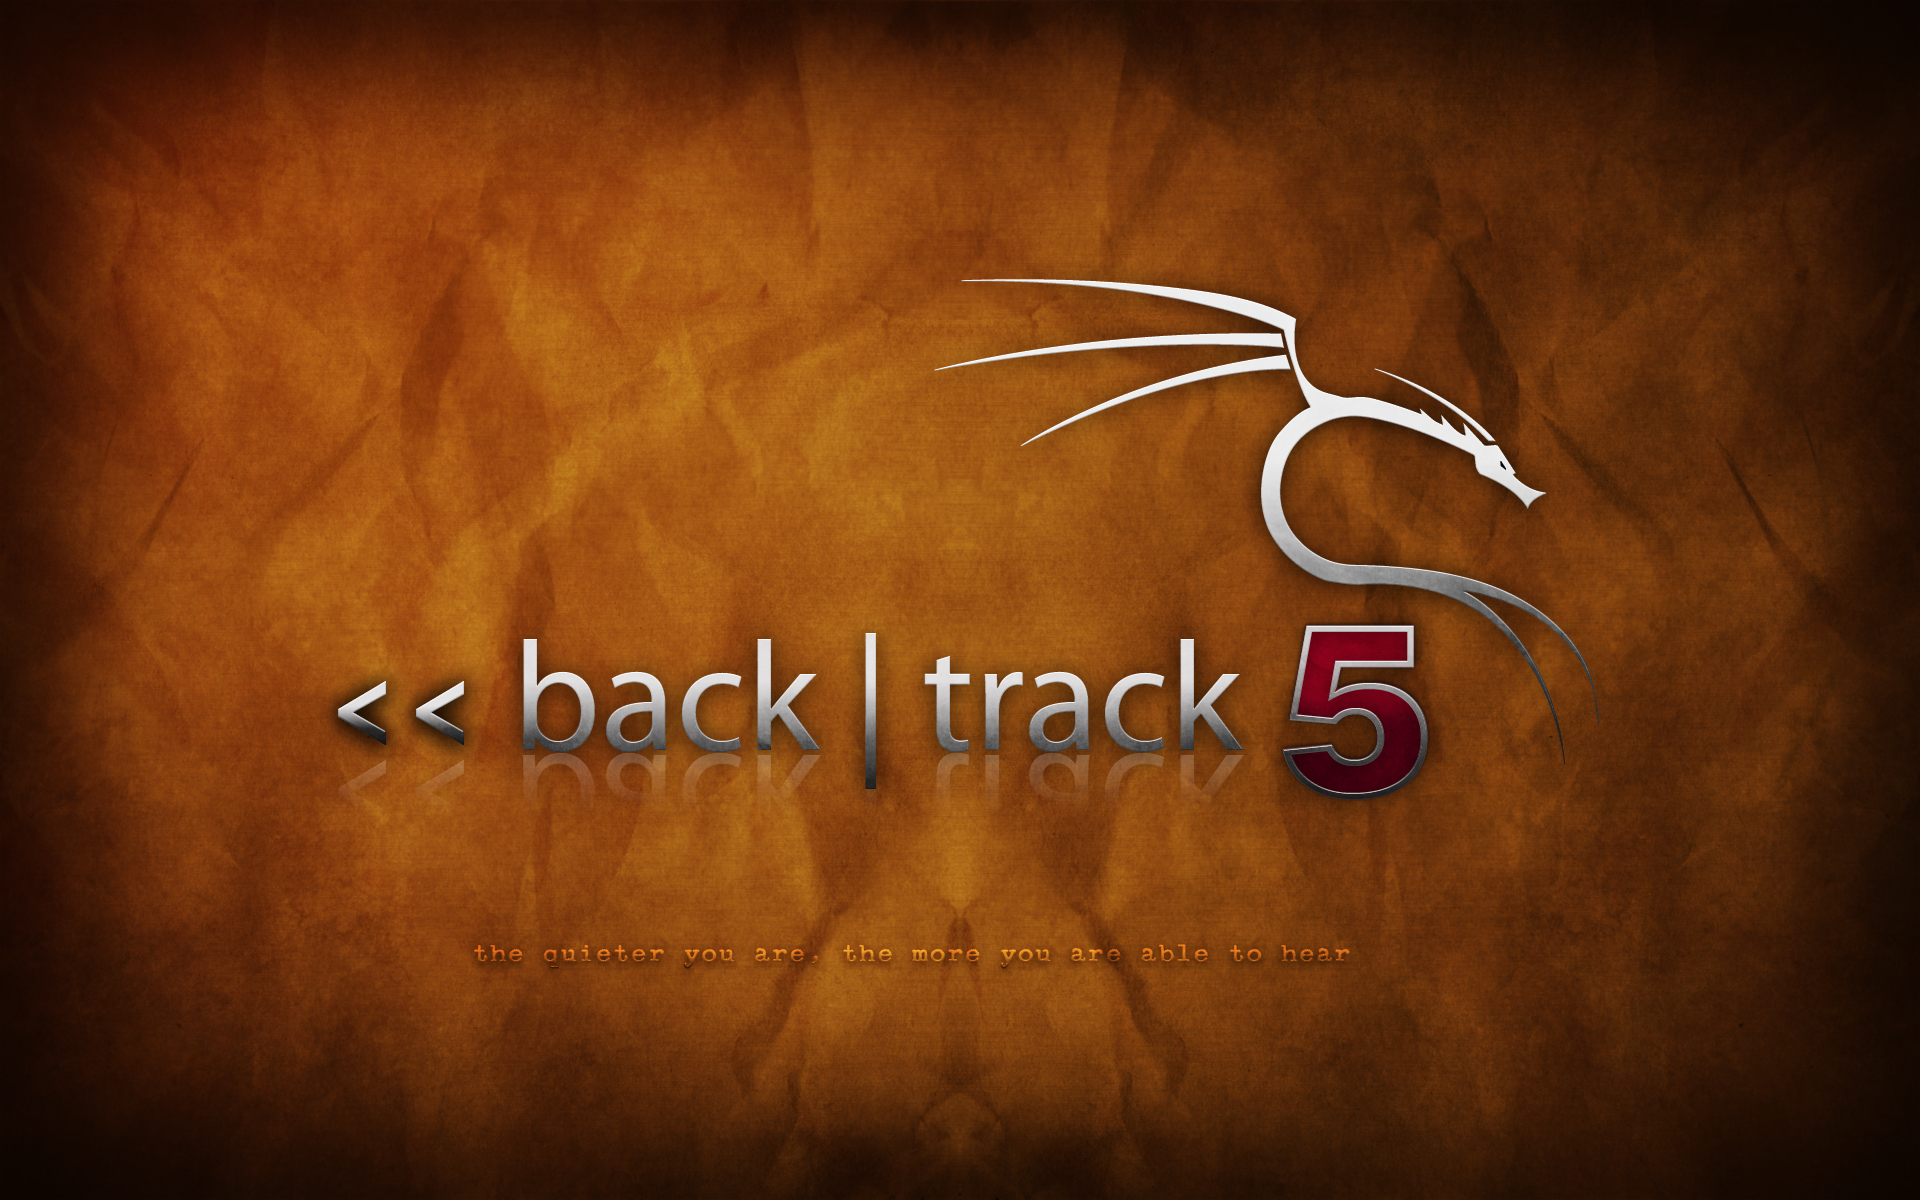 backtrack-5-orange-2.png